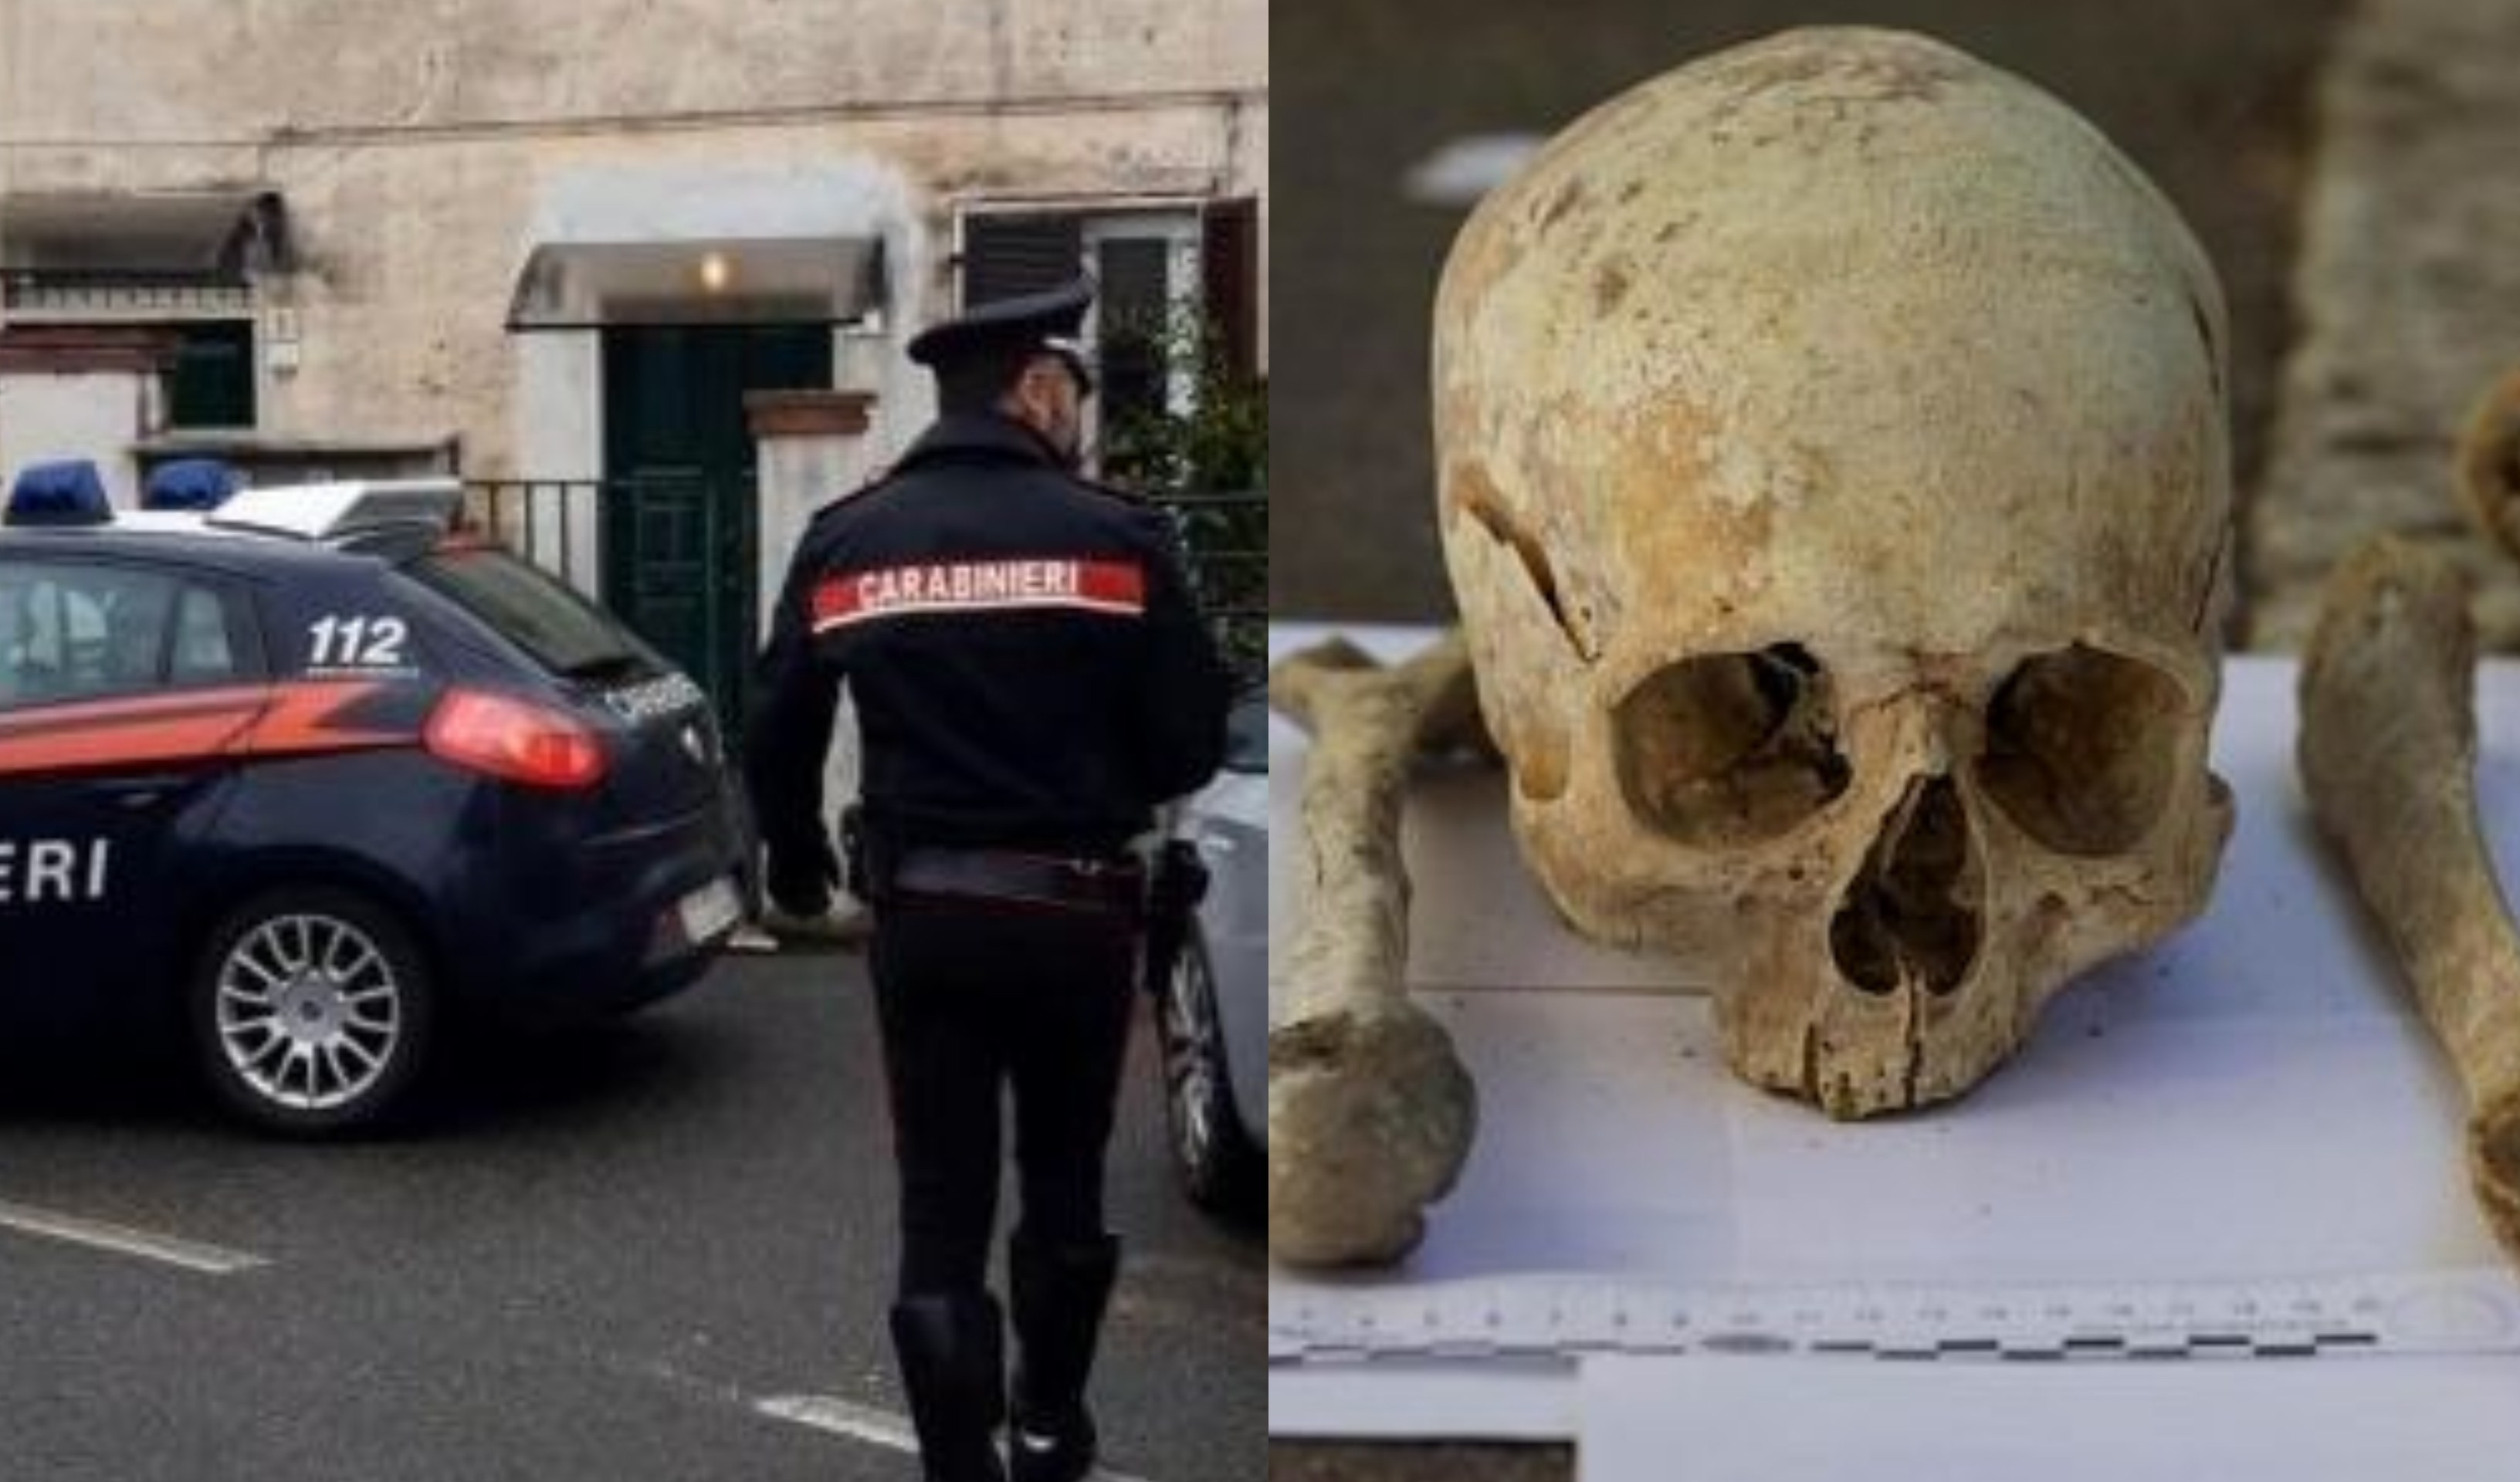 Operai al lavoro trovano cranio in un sottoscala e chiamano i carabinieri